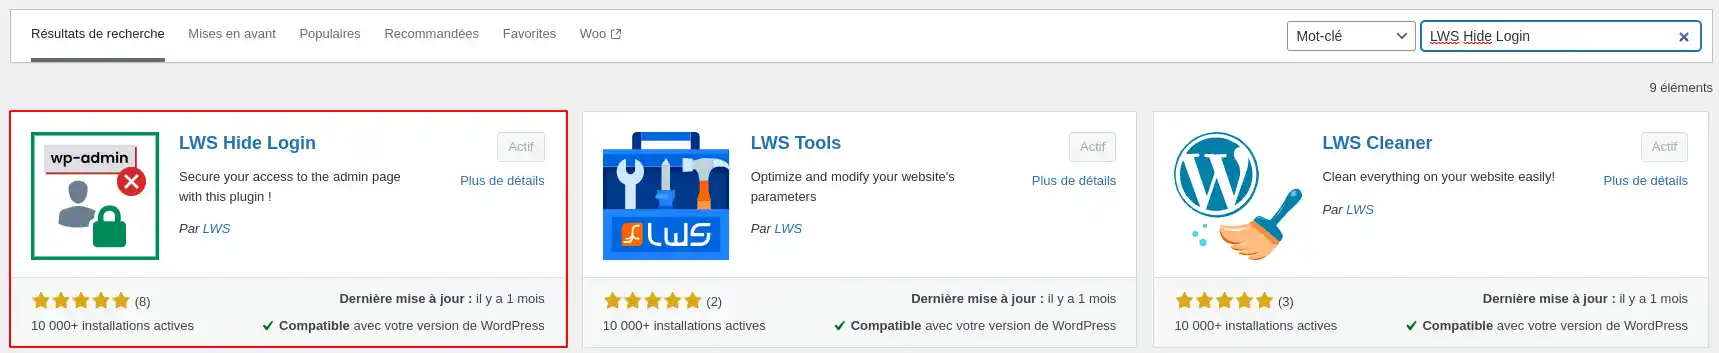 Comment protéger l’accès à l’administration WordPress avec LWS Hide Login ?